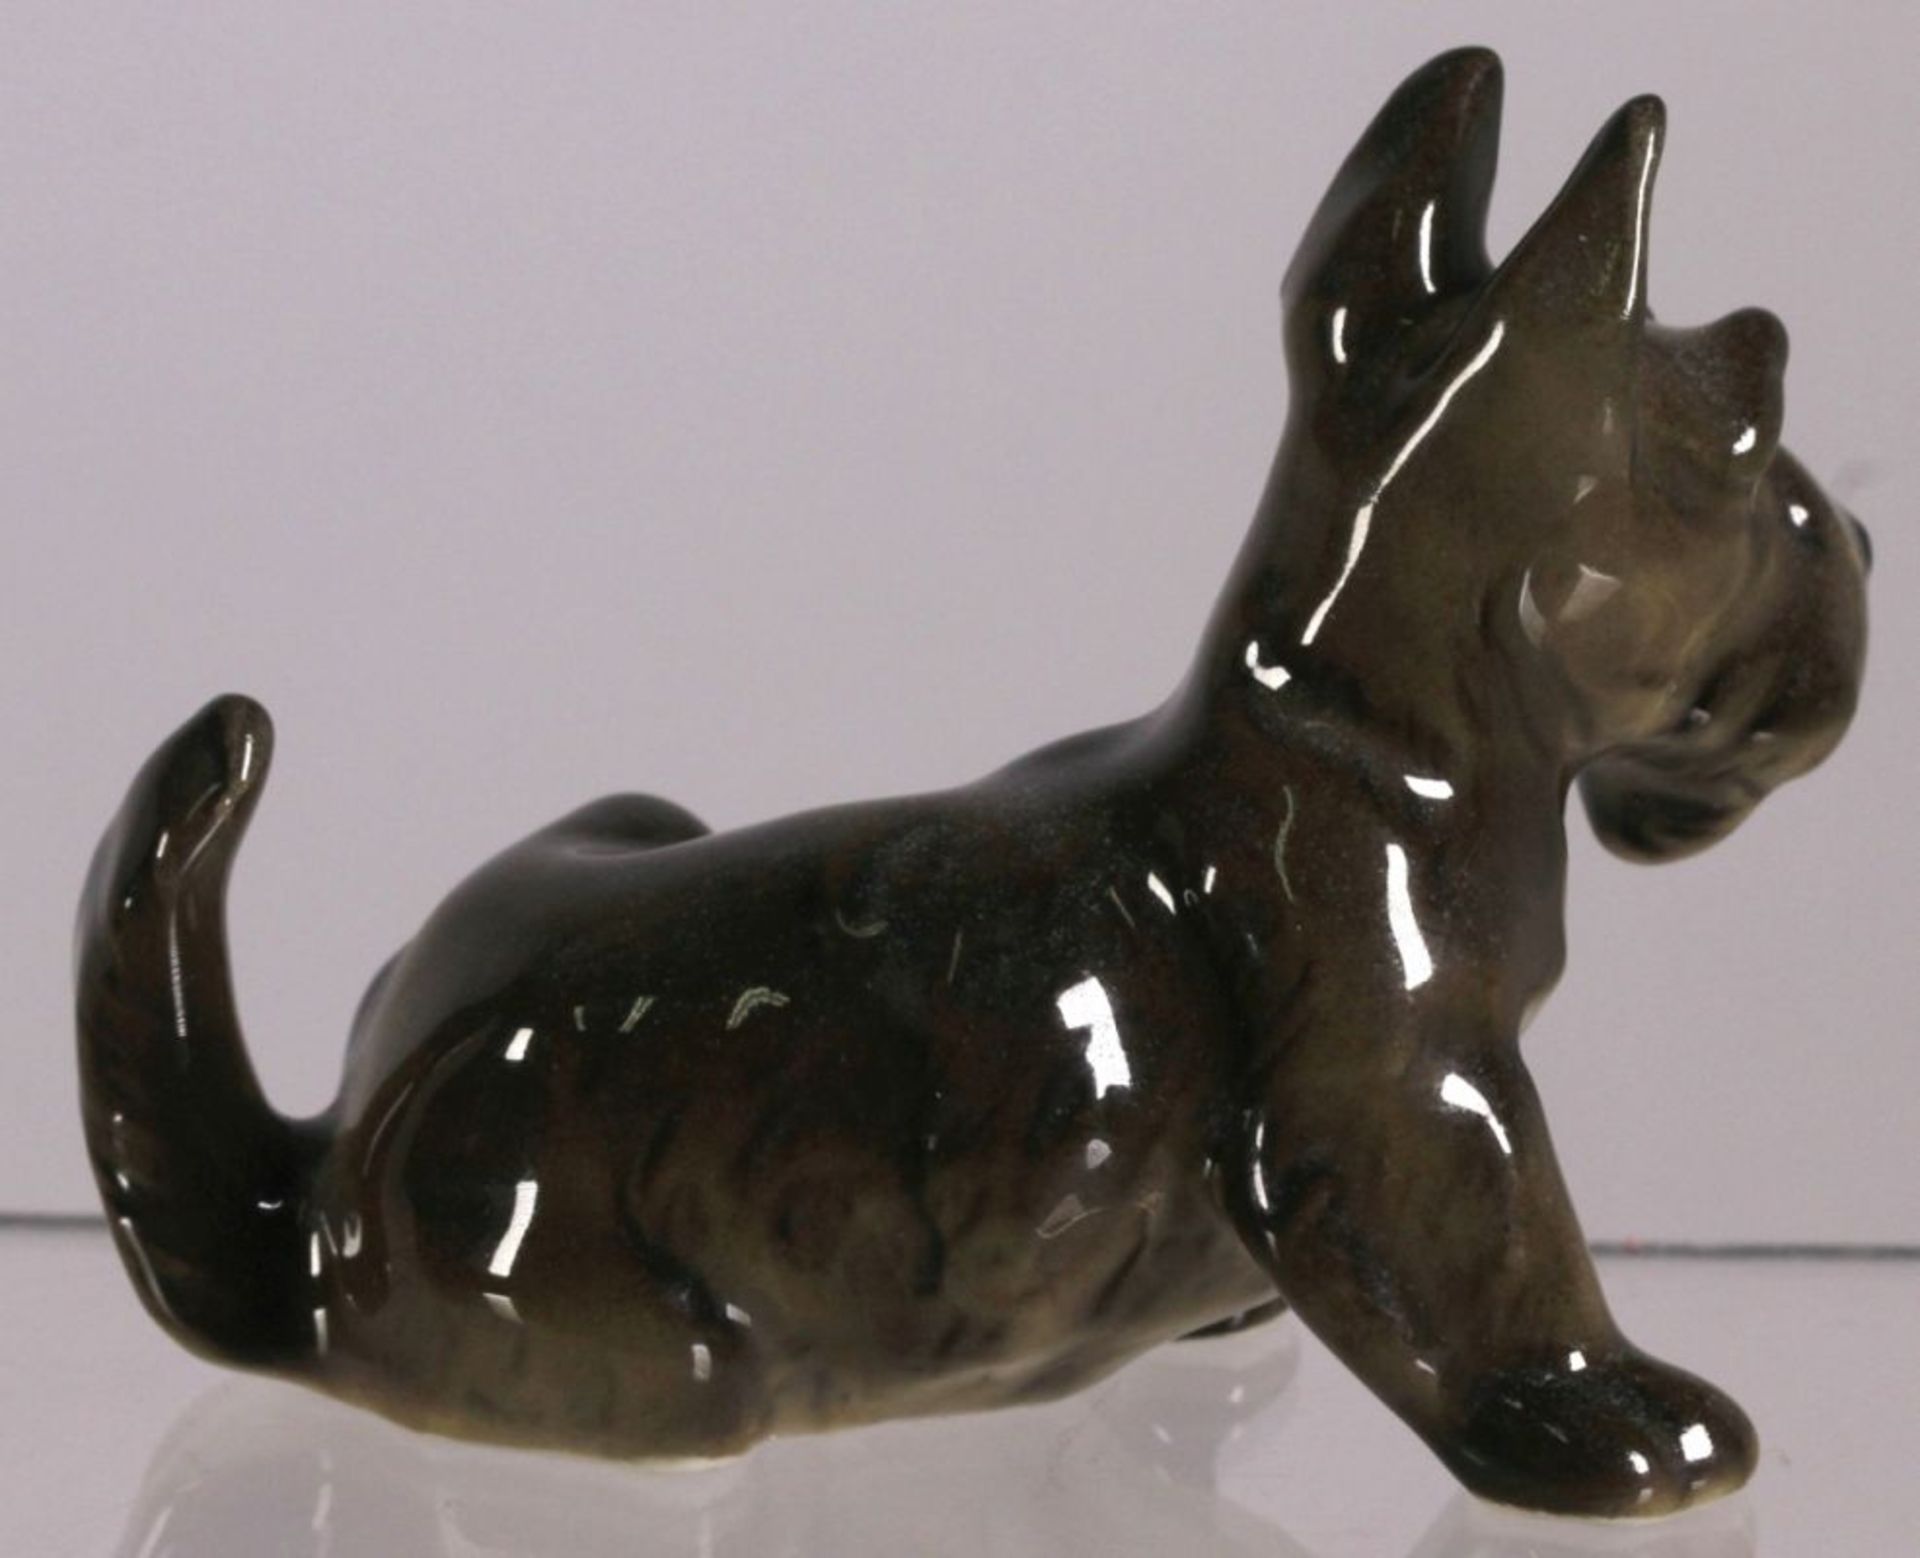 Porzellan-Tierplastik, "Terrier", Lorenz Hutschenreuther, Kunstabteilung Selb, um 1955-68, - Bild 2 aus 3